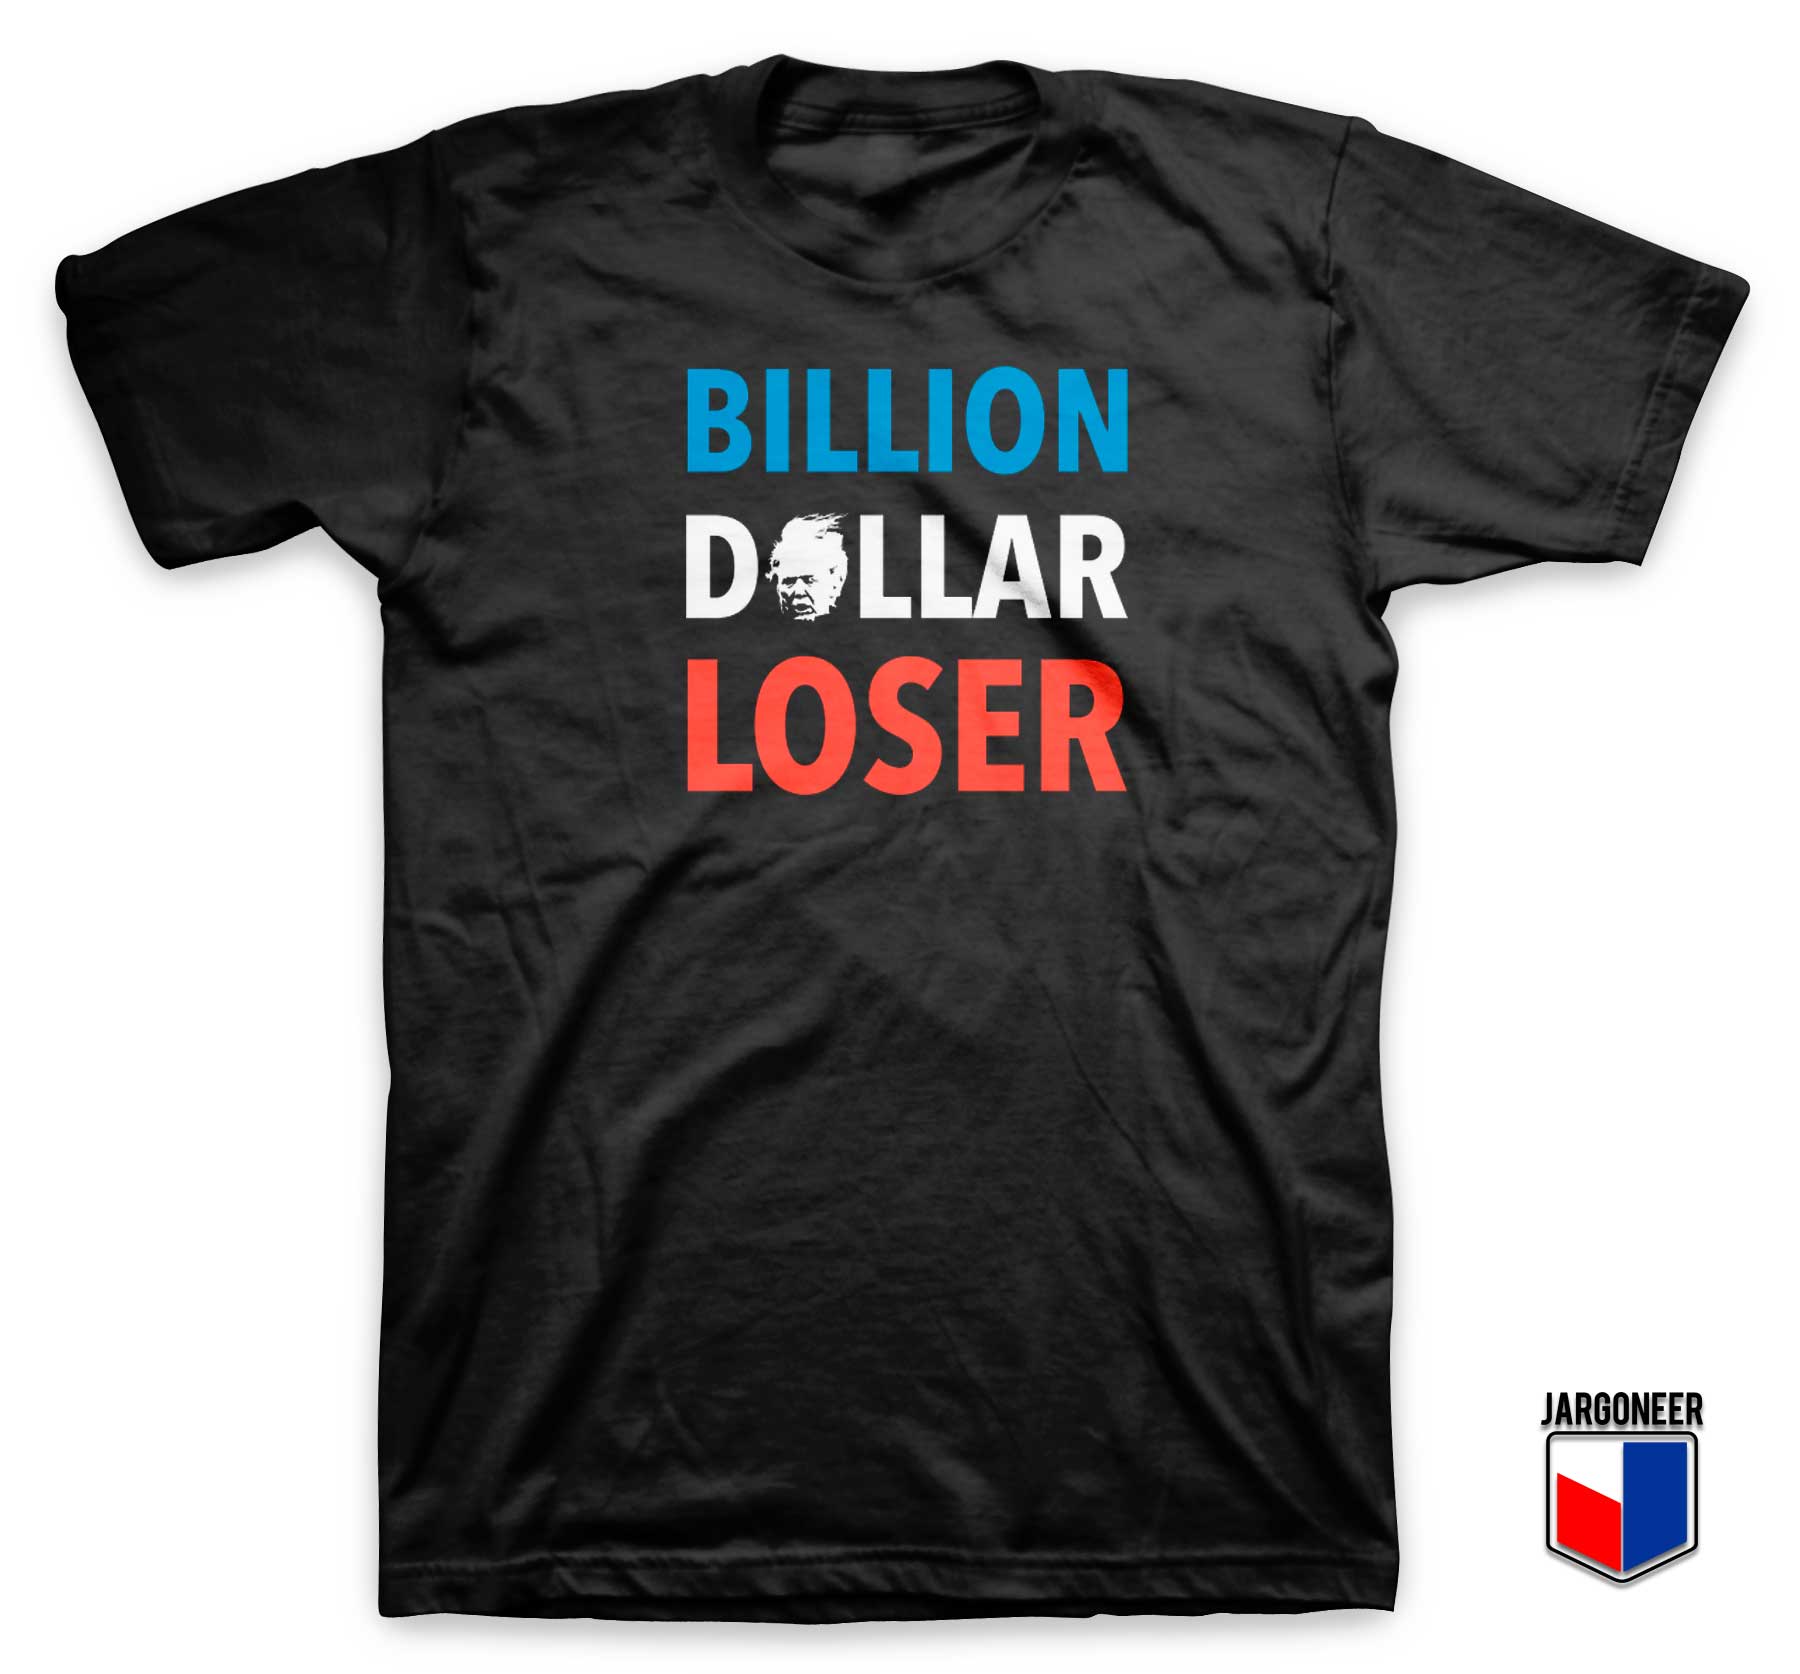 Billion Dollar Loser T Shirt - Shop Unique Graphic Cool Shirt Designs